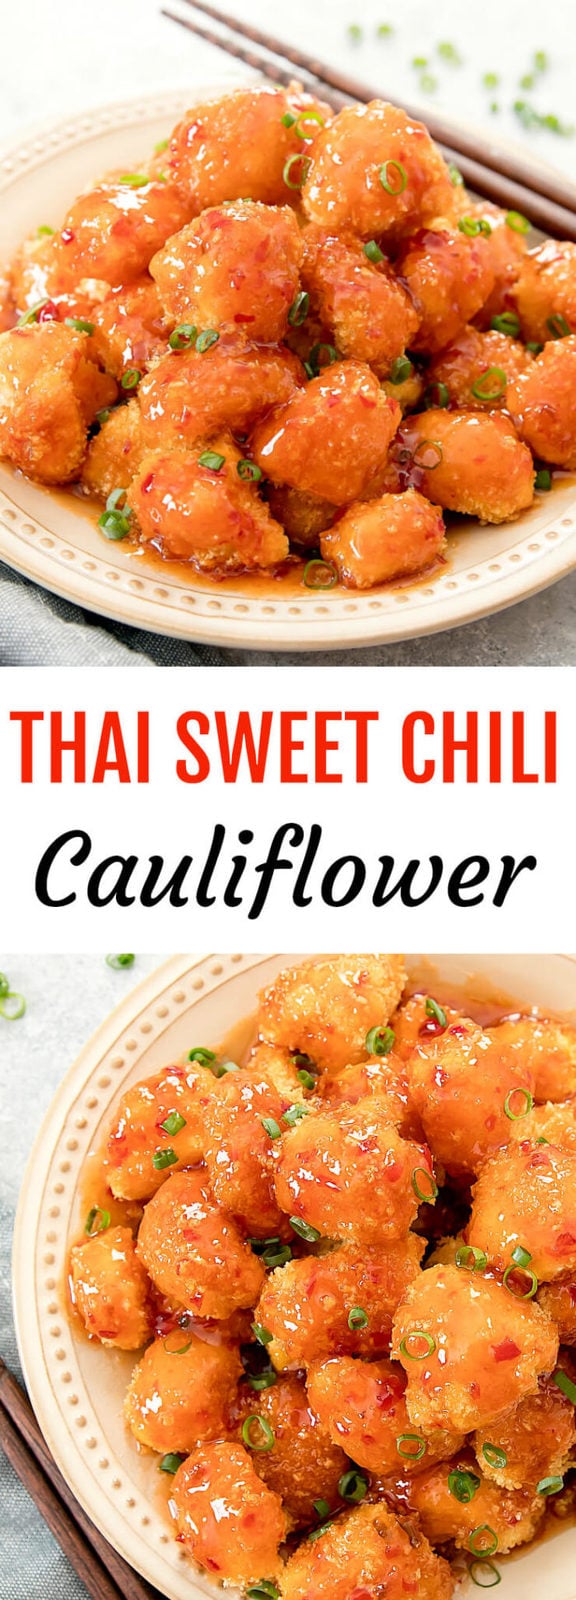 Thai Sweet Chili Cauliflower